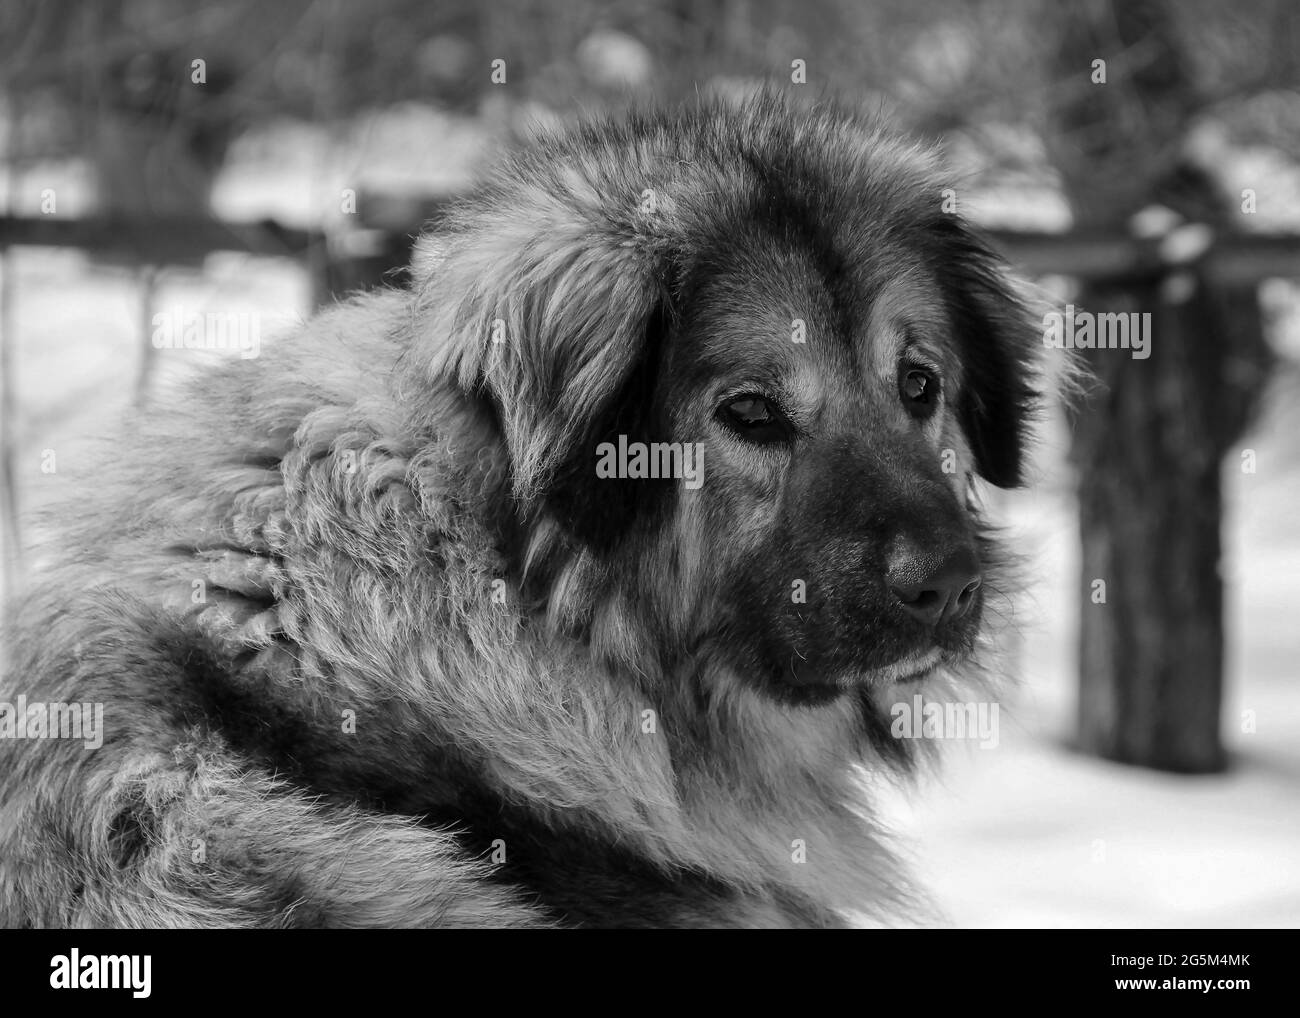 Nahaufnahme eines illyrischen Schäferhundes, auch bekannt als jugoslawischer Schäferhund oder Schäferhund aus den Sharr-Bergen (Šarplaninac) Stockfoto